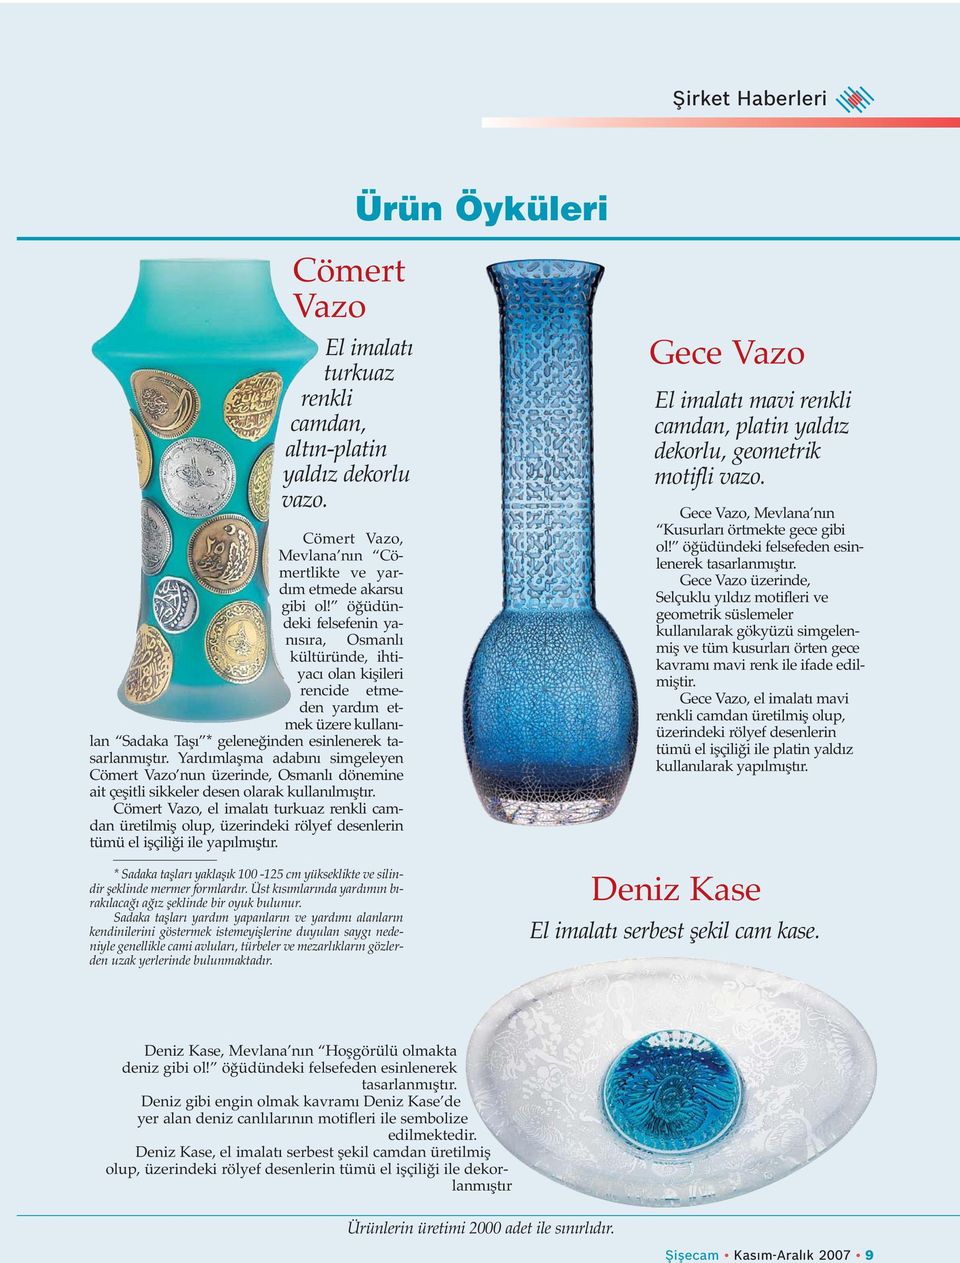 Yardımlaşma adabını simgeleyen Cömert Vazo nun üzerinde, Osmanlı dönemine ait çeşitli sikkeler desen olarak kullanılmıştır.